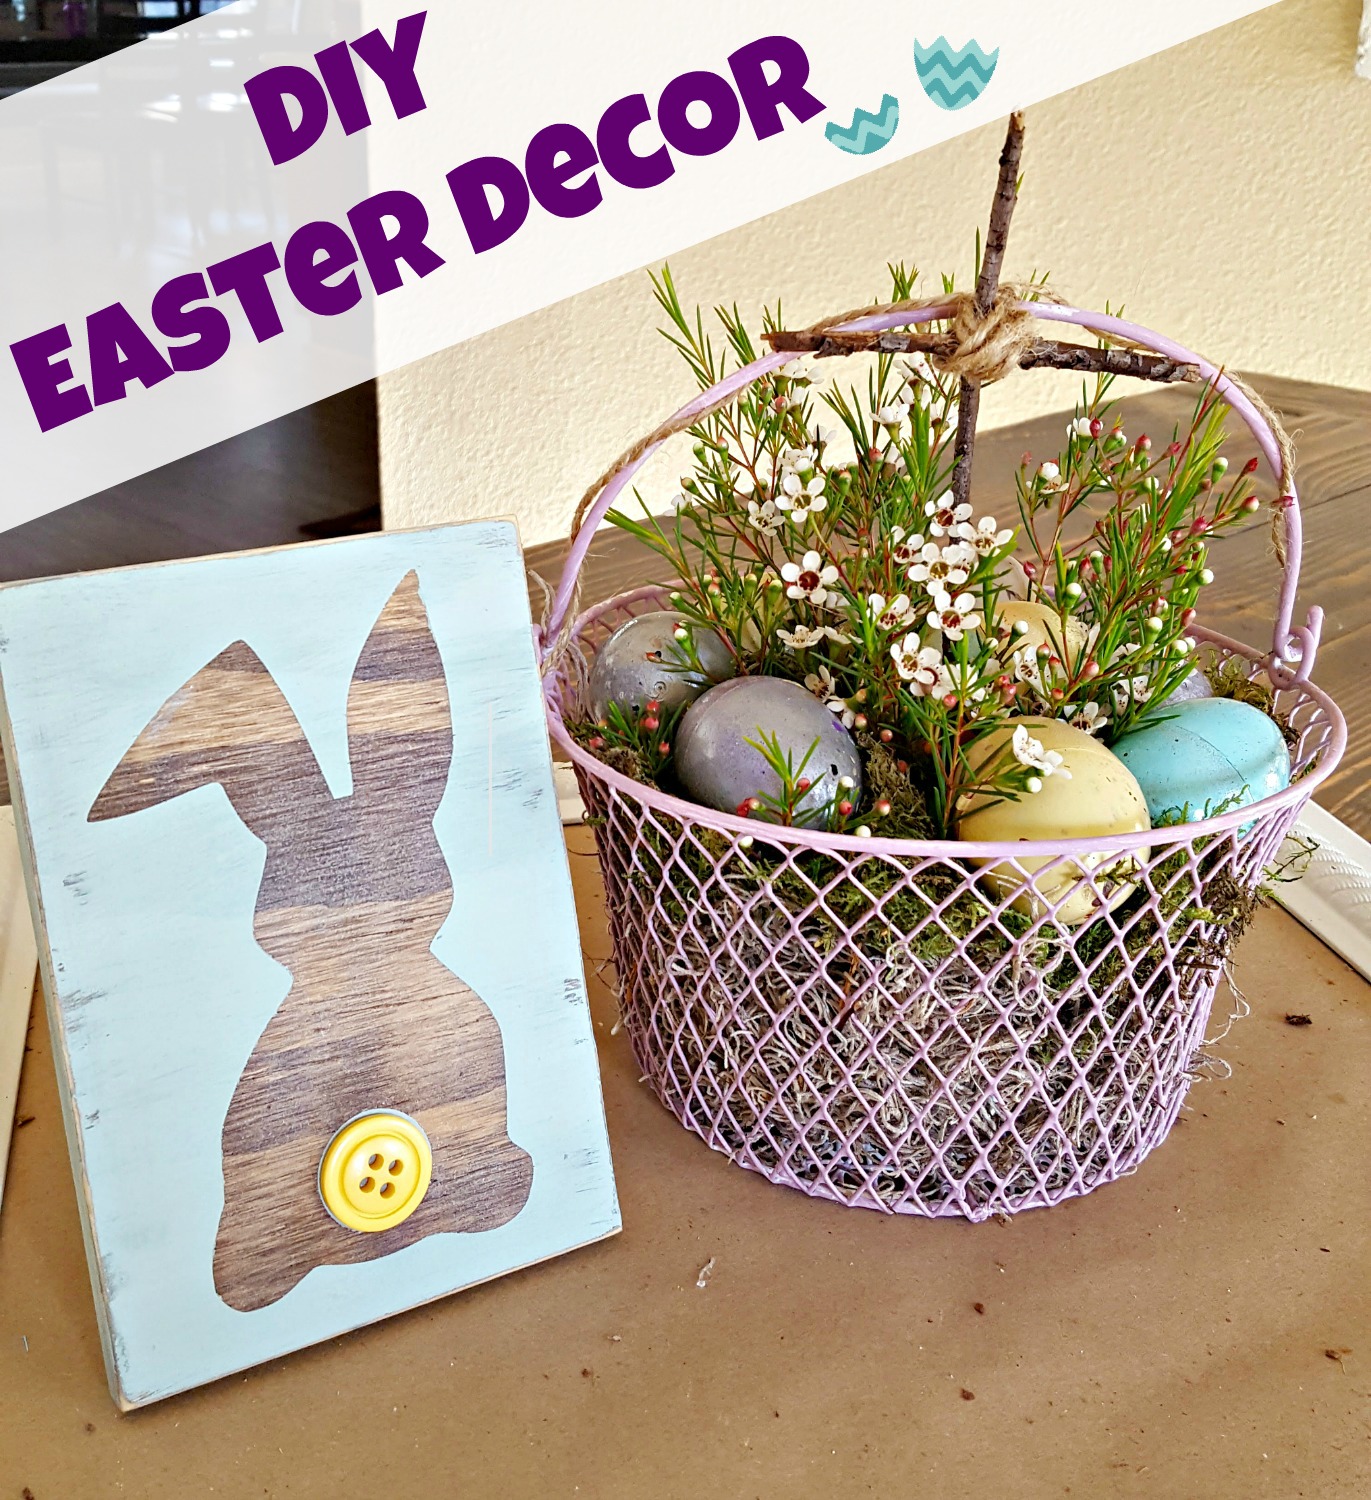 DIY Easter egg makeover tutorial